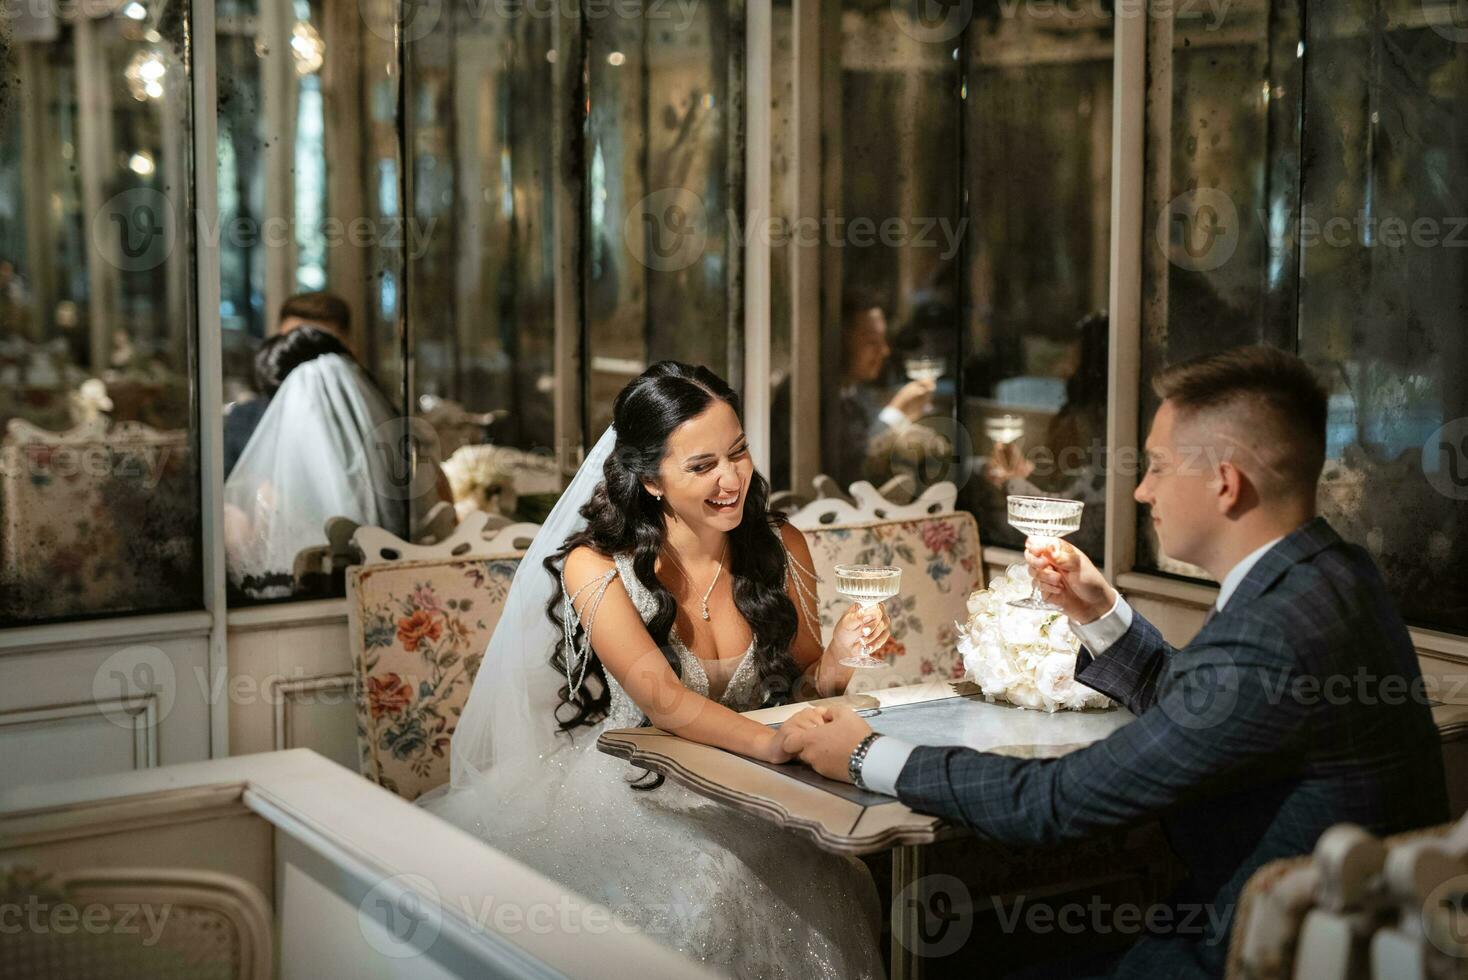 bruden och brudgummen inne i en cocktailbar foto